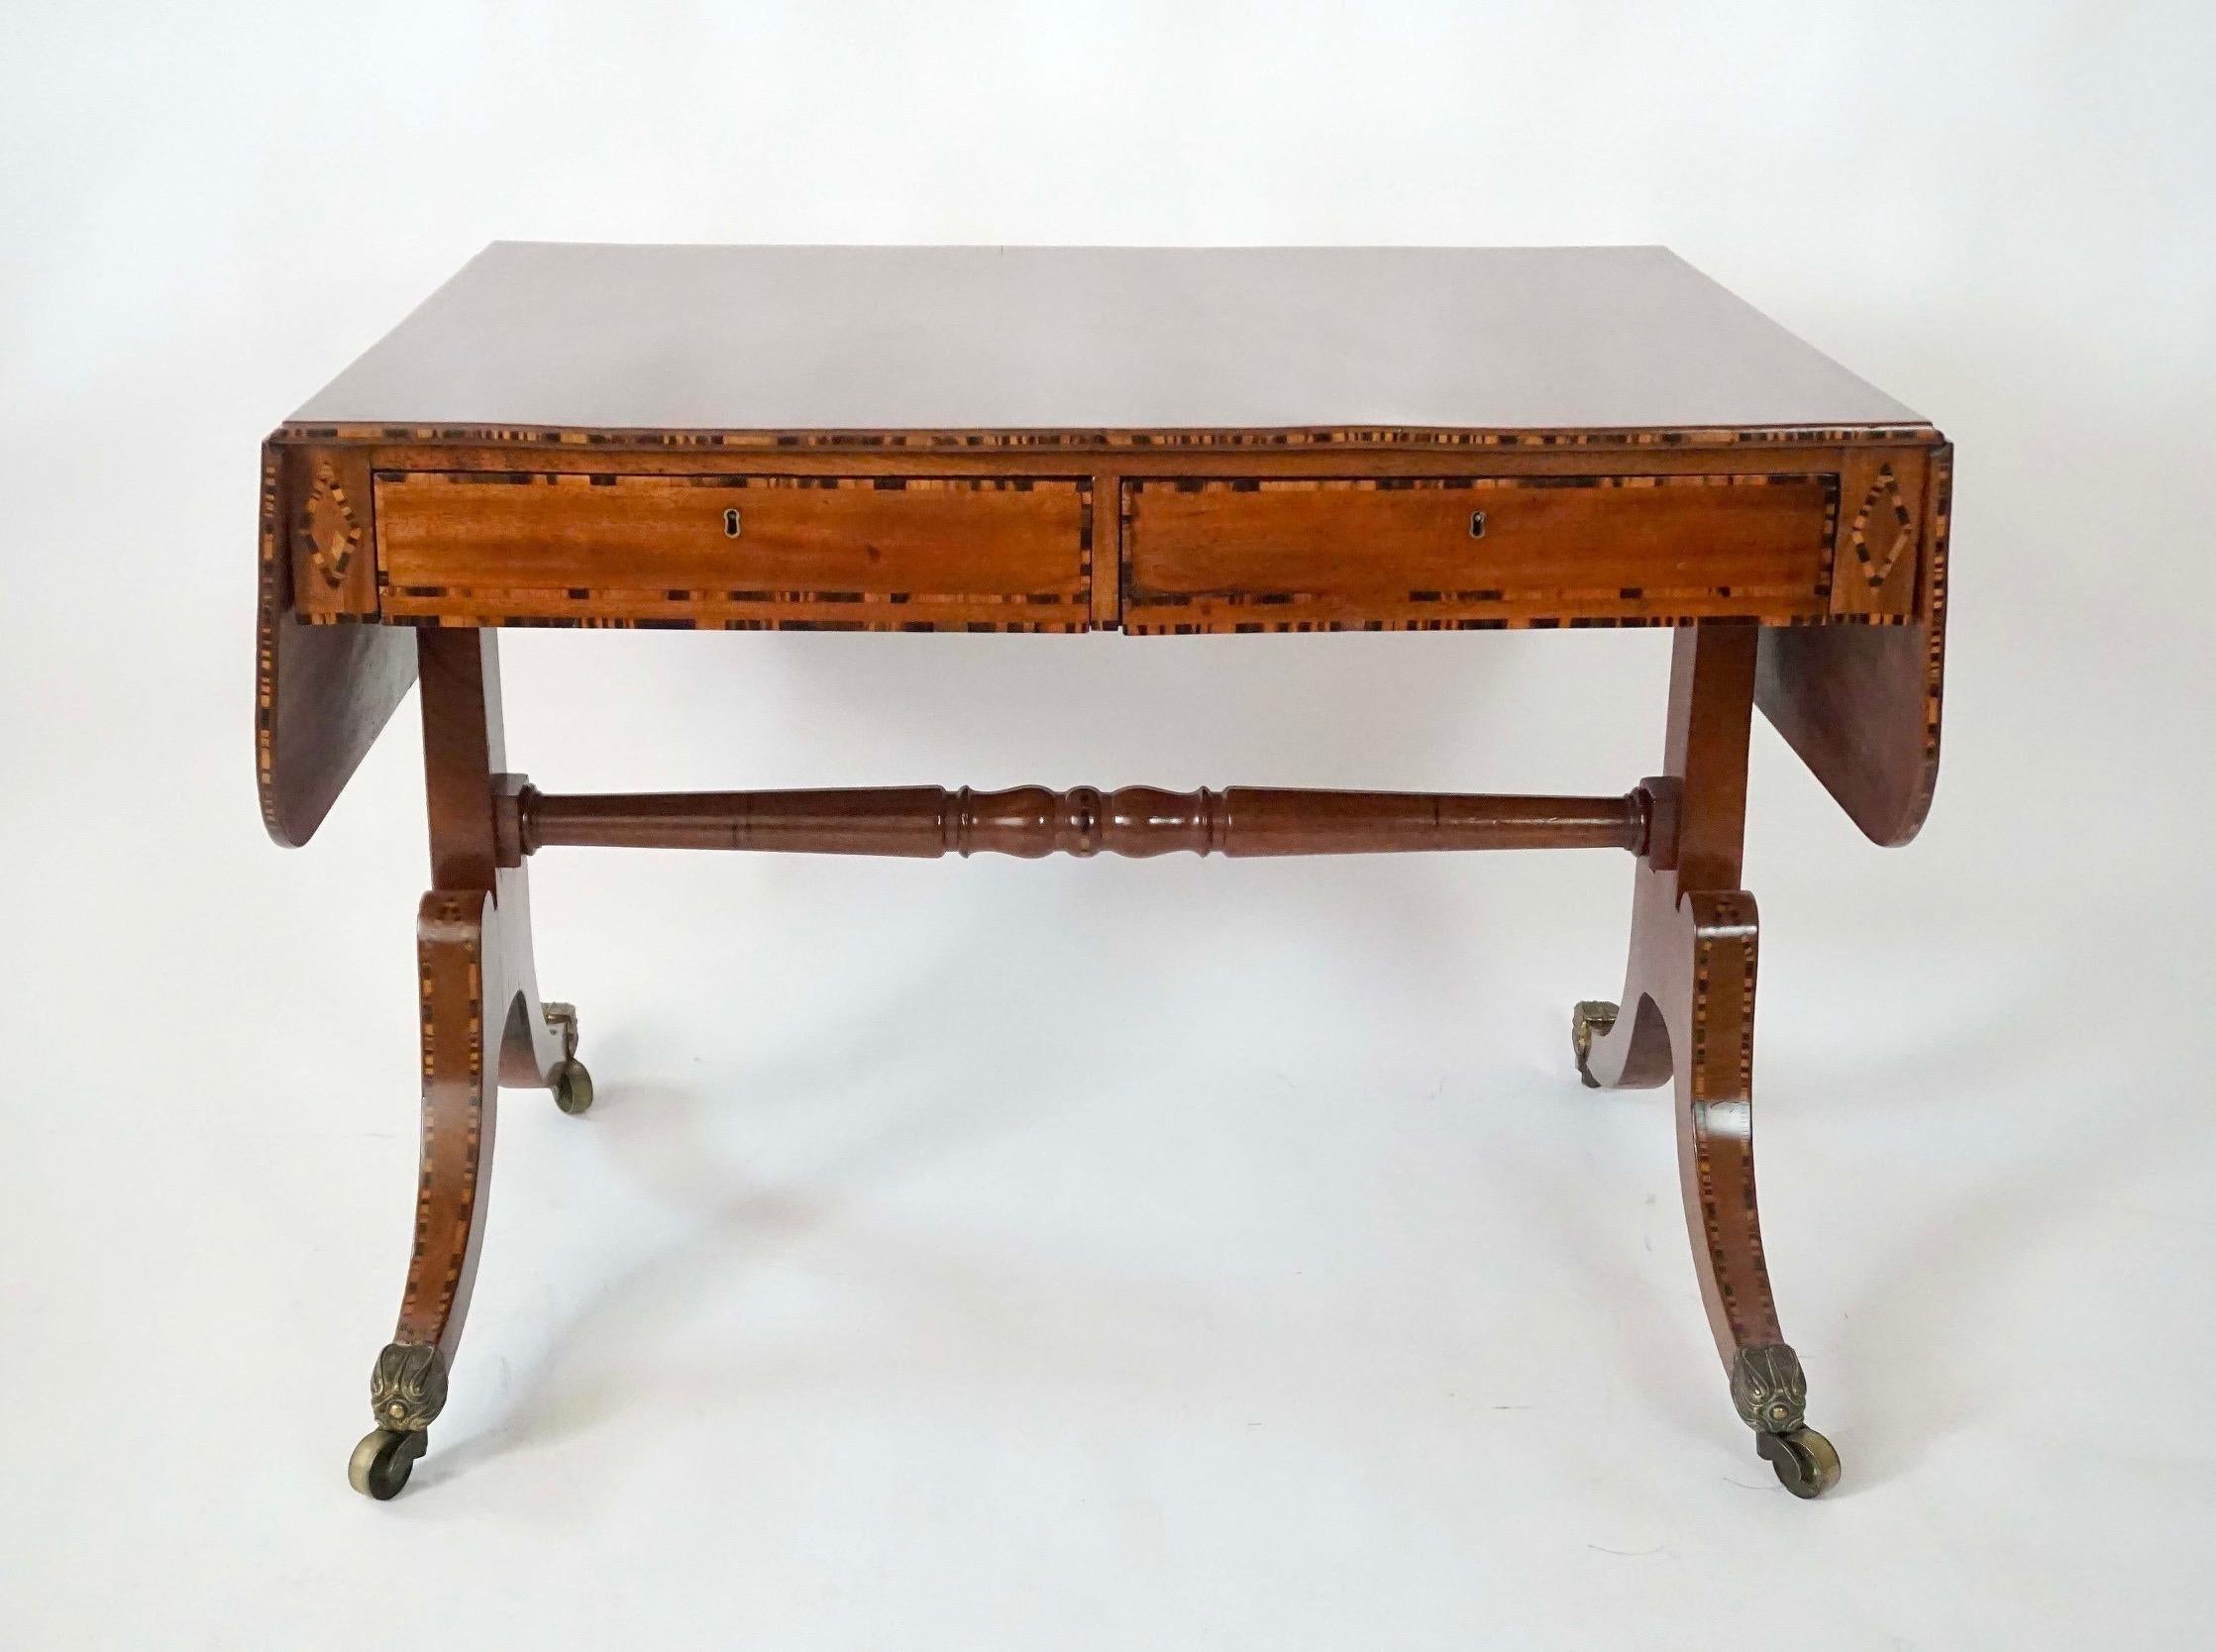 Eine sehr feine und elegante circa 1820 Englisch Regency massivem Mahagoni Drop-Flügel zwei Schublade Sofa Tisch von renommierten Londoner Tischler William Wilkinson von falschen doppelseitigen Form mit Auge-blendend Kalamander Intarsien an den